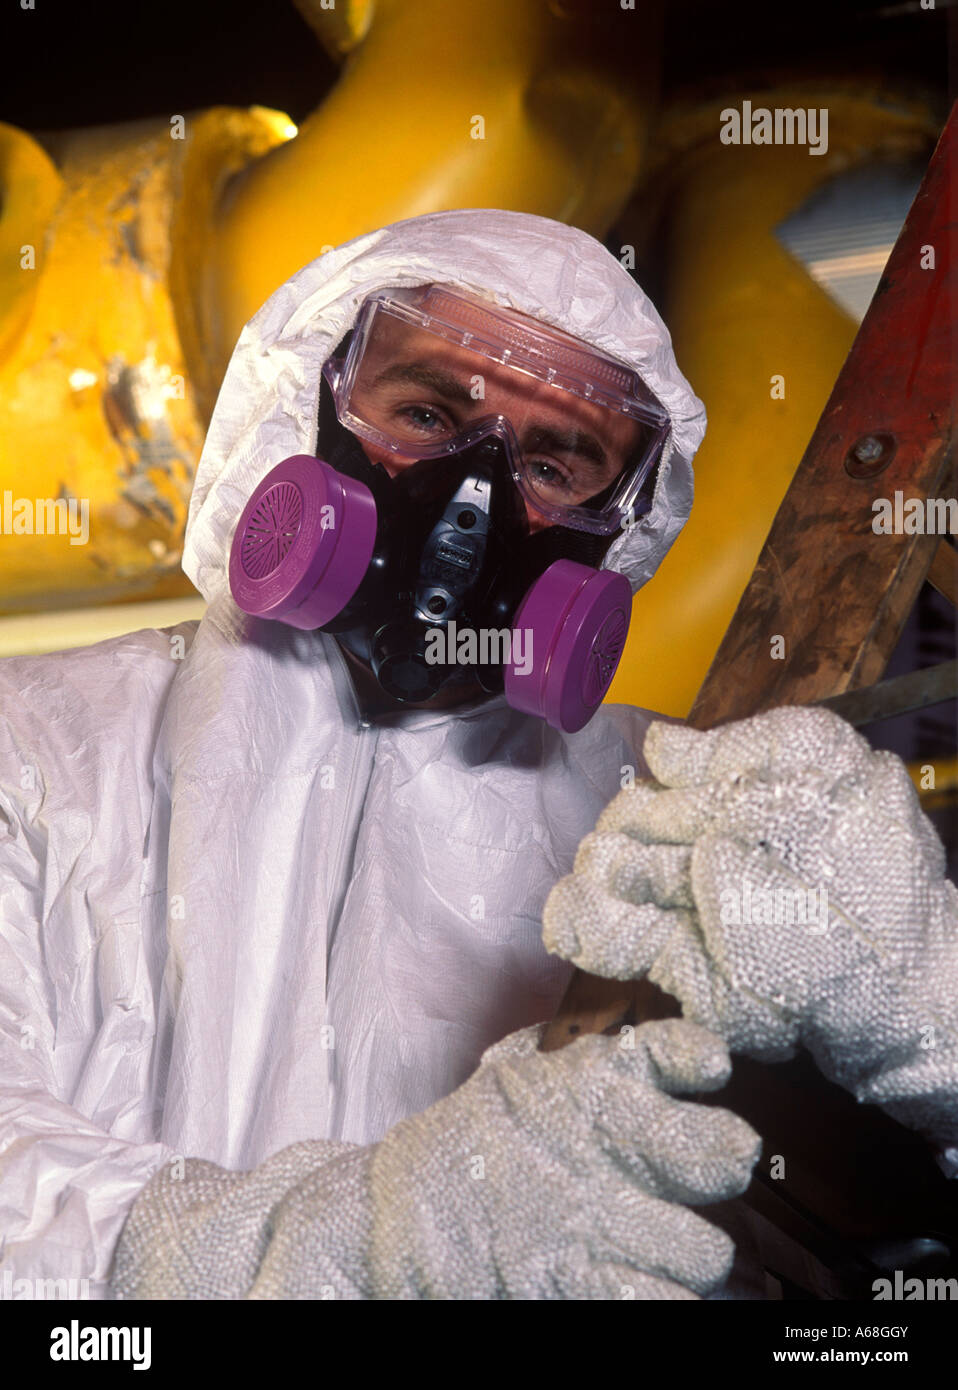 Asbestsanierung Arbeiter mit Schutzanzug und Maske auf einem Industrieareal Stockfoto